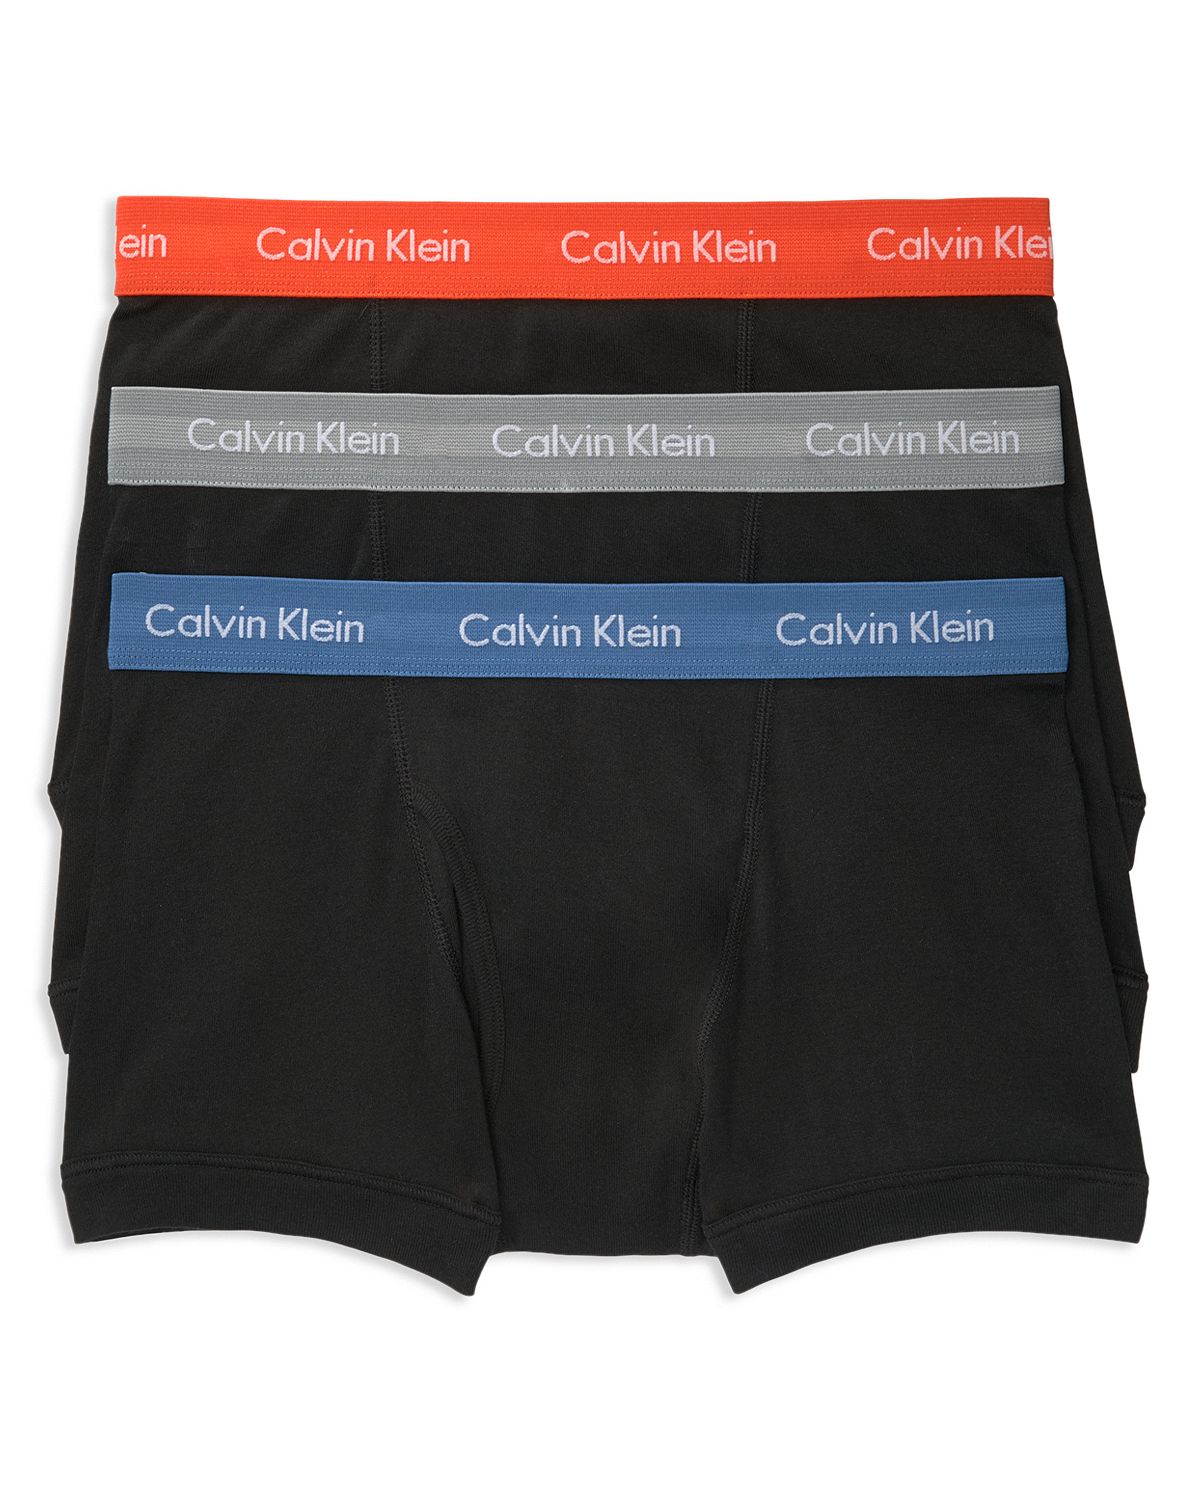 Calvin Klein Trunks Pack Of 3 Black Orange/Gray/Blue